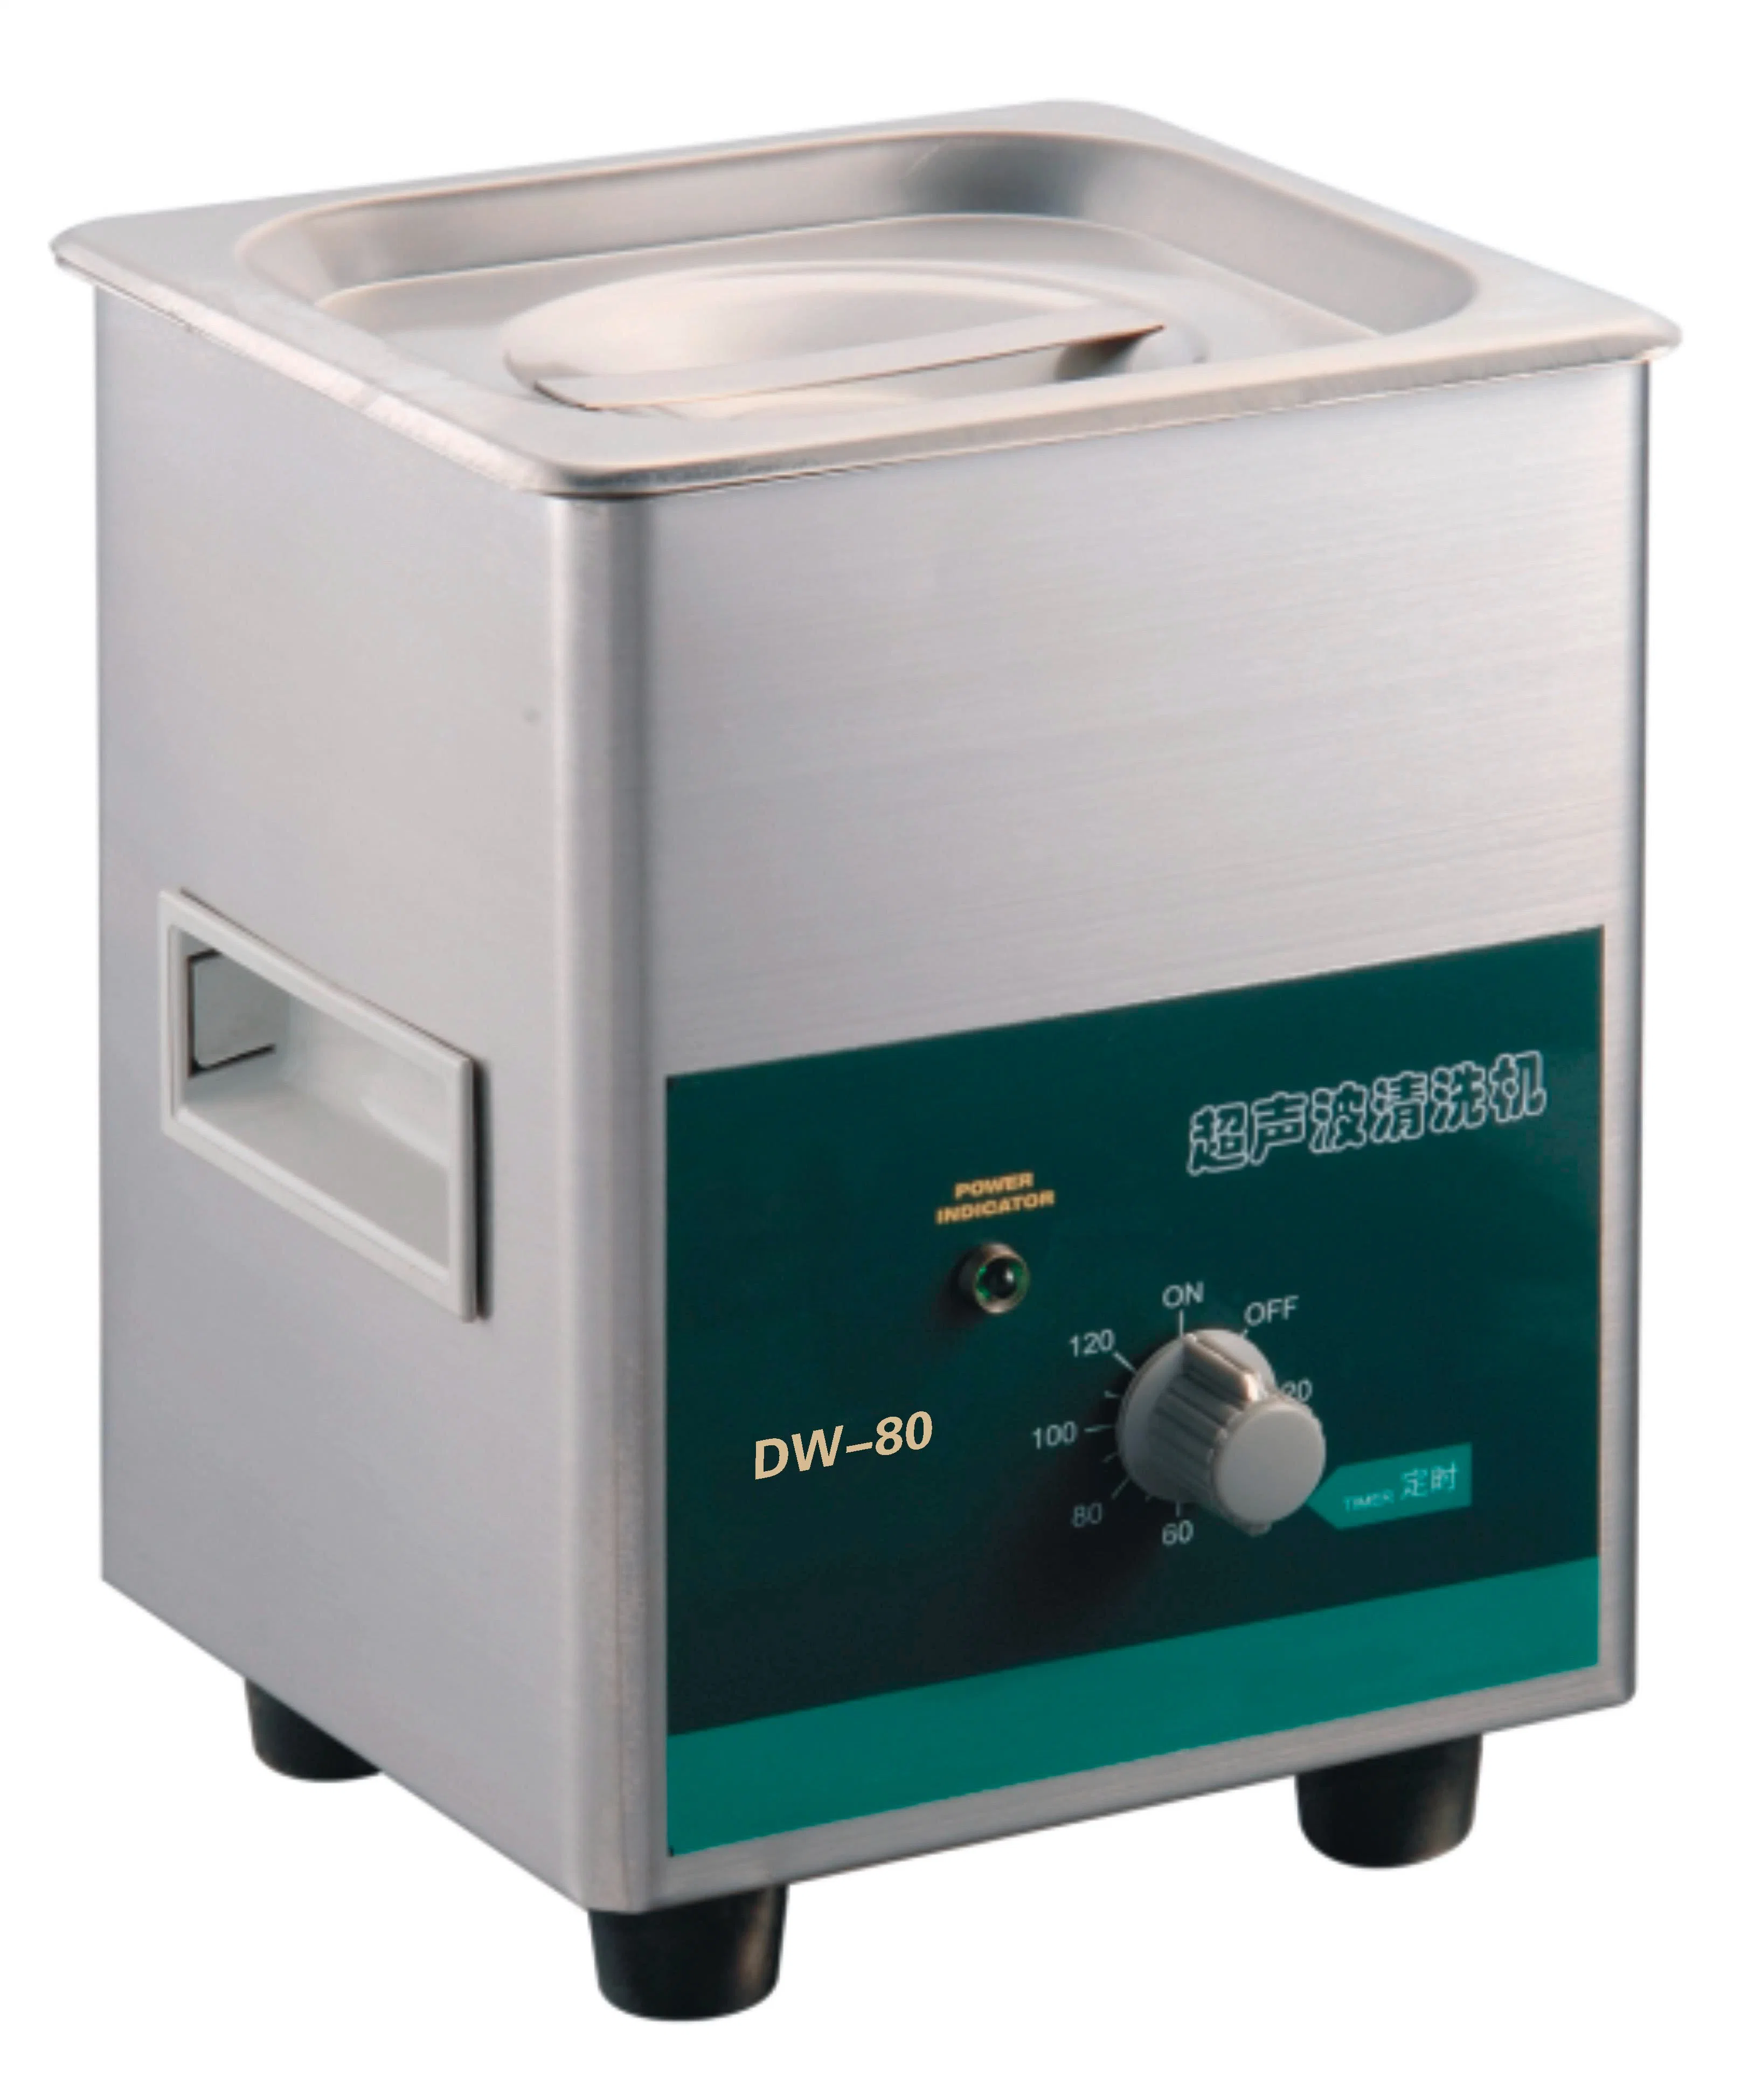 Günstige Preis Labor Reinigung Reiniger Digital Ultraschall Schmuck Reinigung Maschine